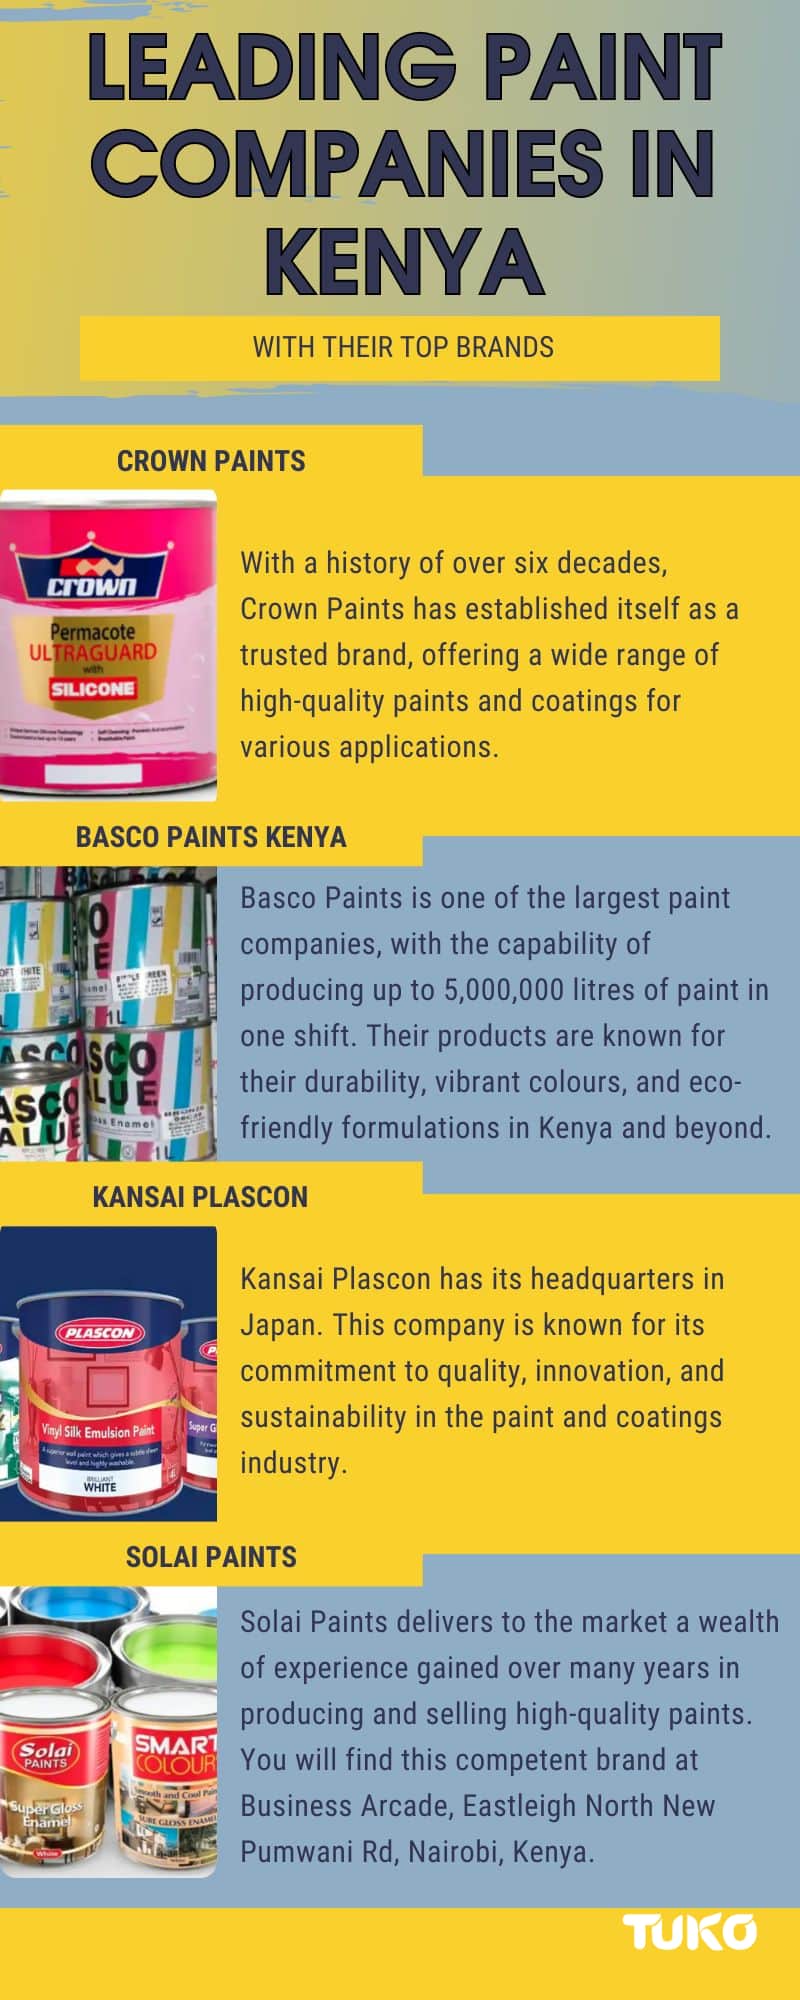 Leading paint companies in Kenya